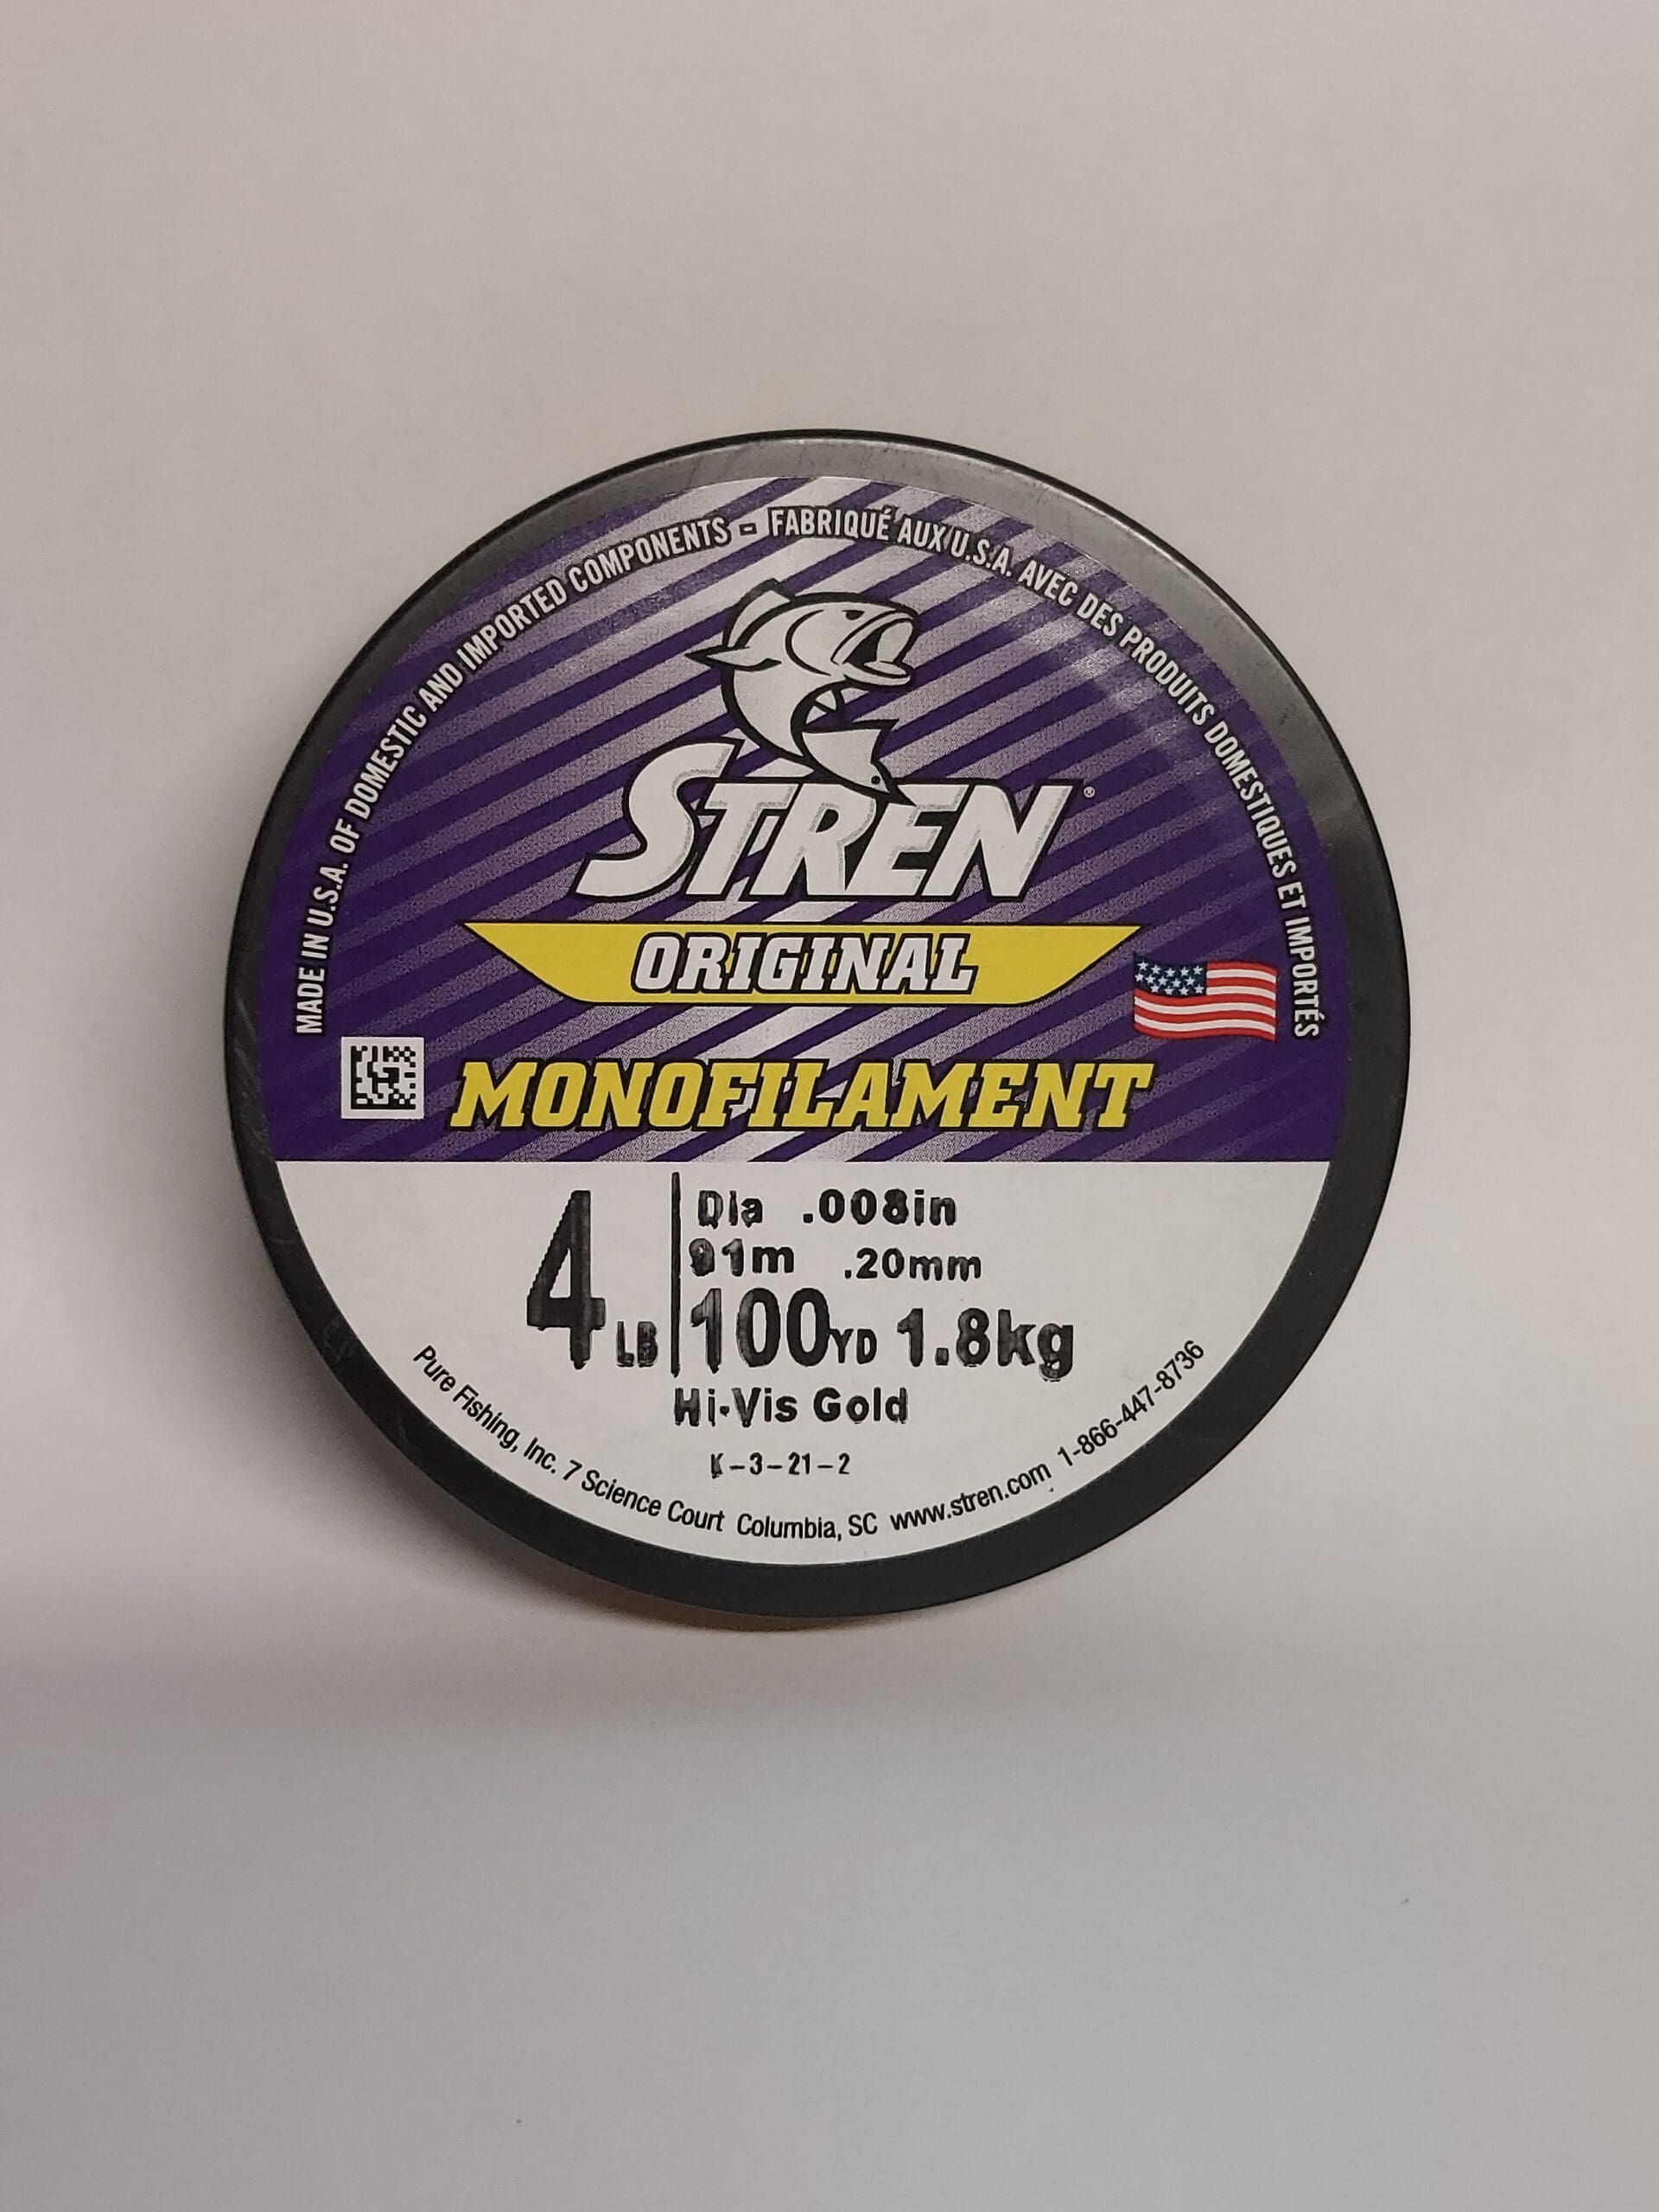 Stren Original®, Hi-Vis Gold, 4lb  1.8kg Monofilament Fishing Line 